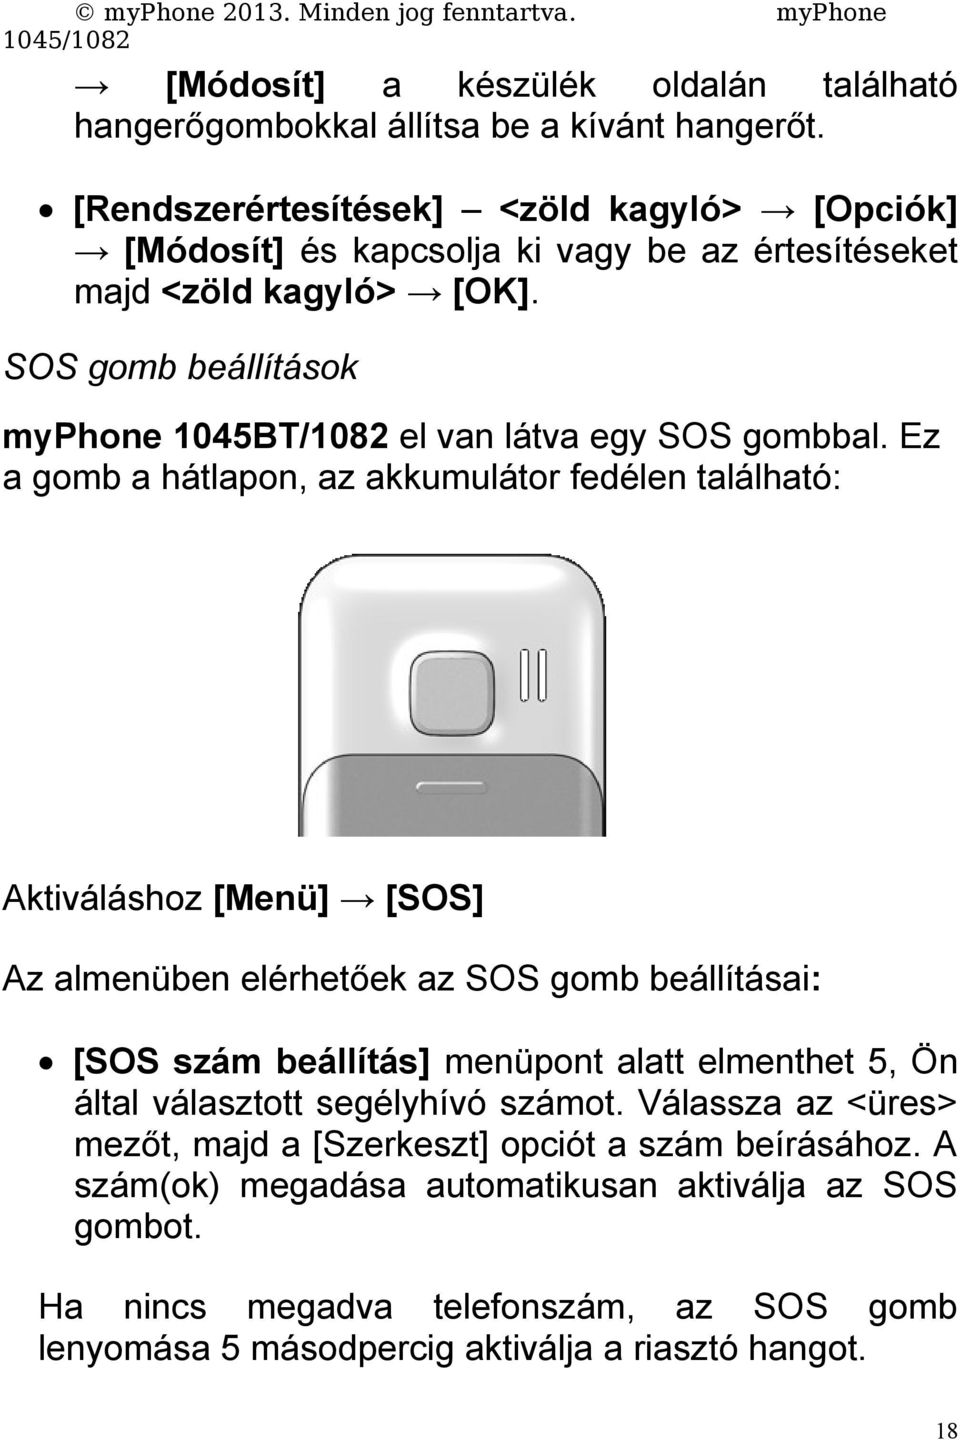 myphone Minden jog fenntartva. myphone 1045/1082 Kezelési útmutató myphone  1045BT/ PDF Ingyenes letöltés